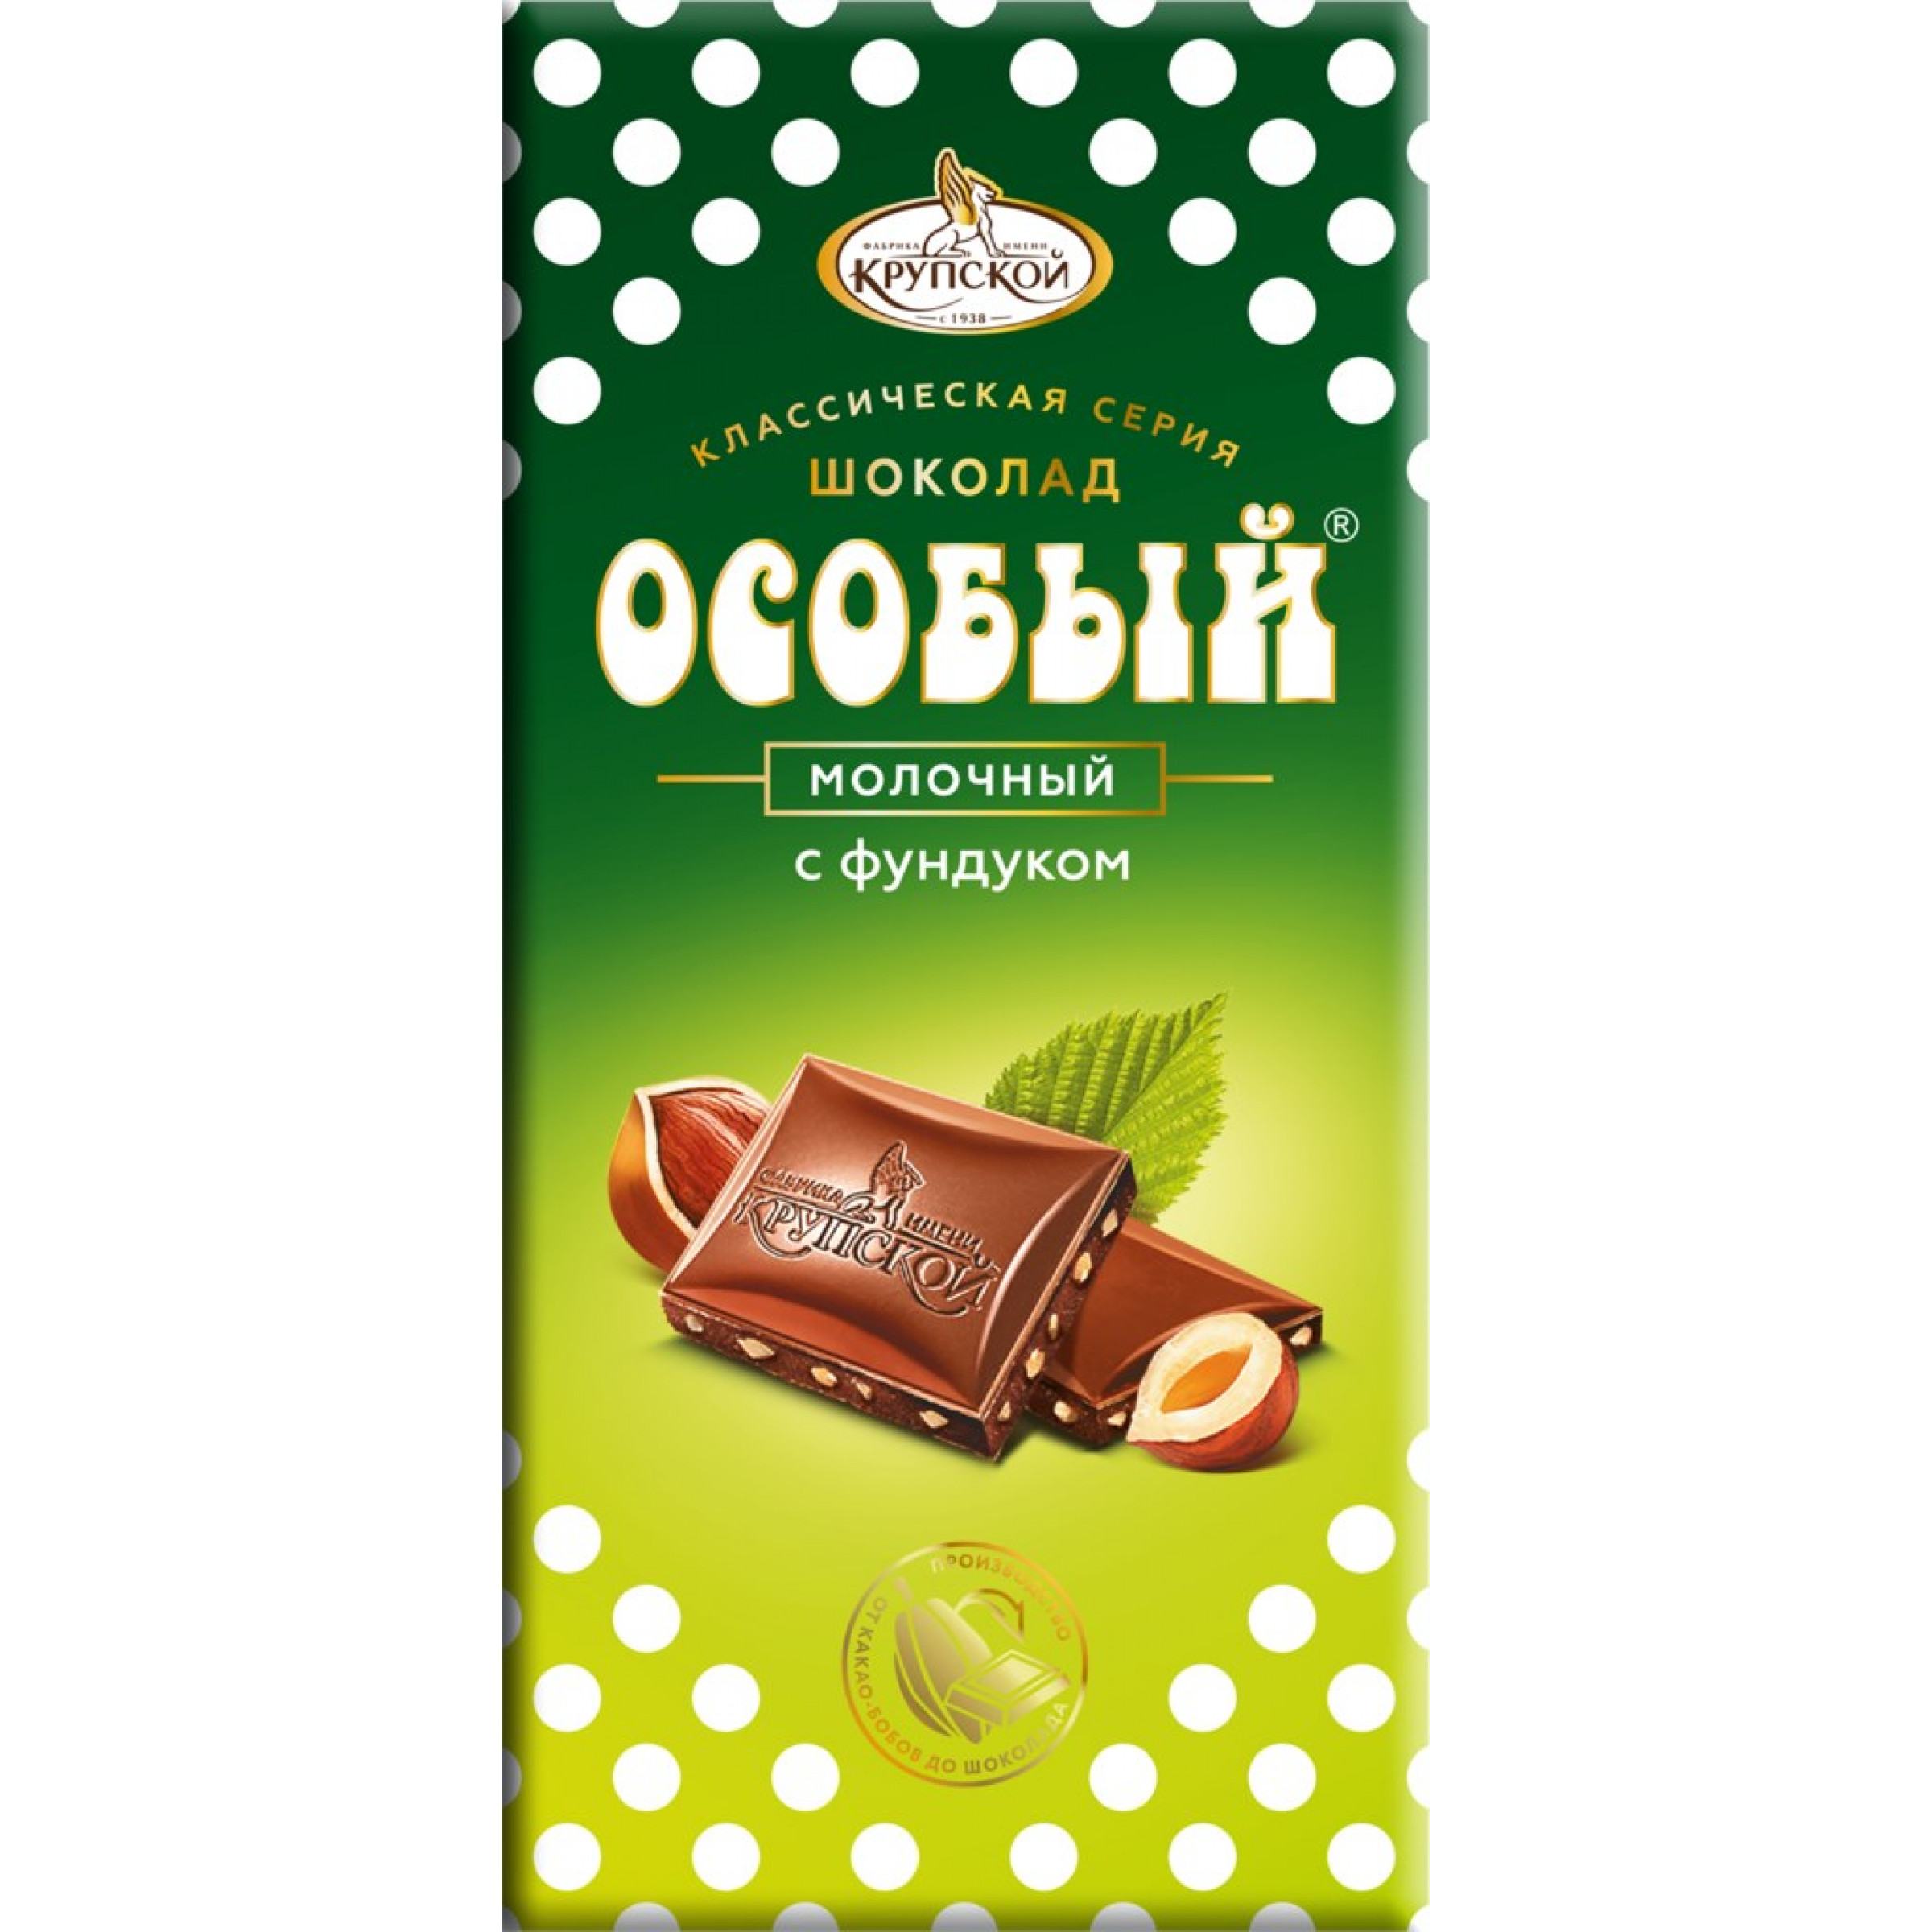 Шоколад молочный с фундуком Особый, 90 г